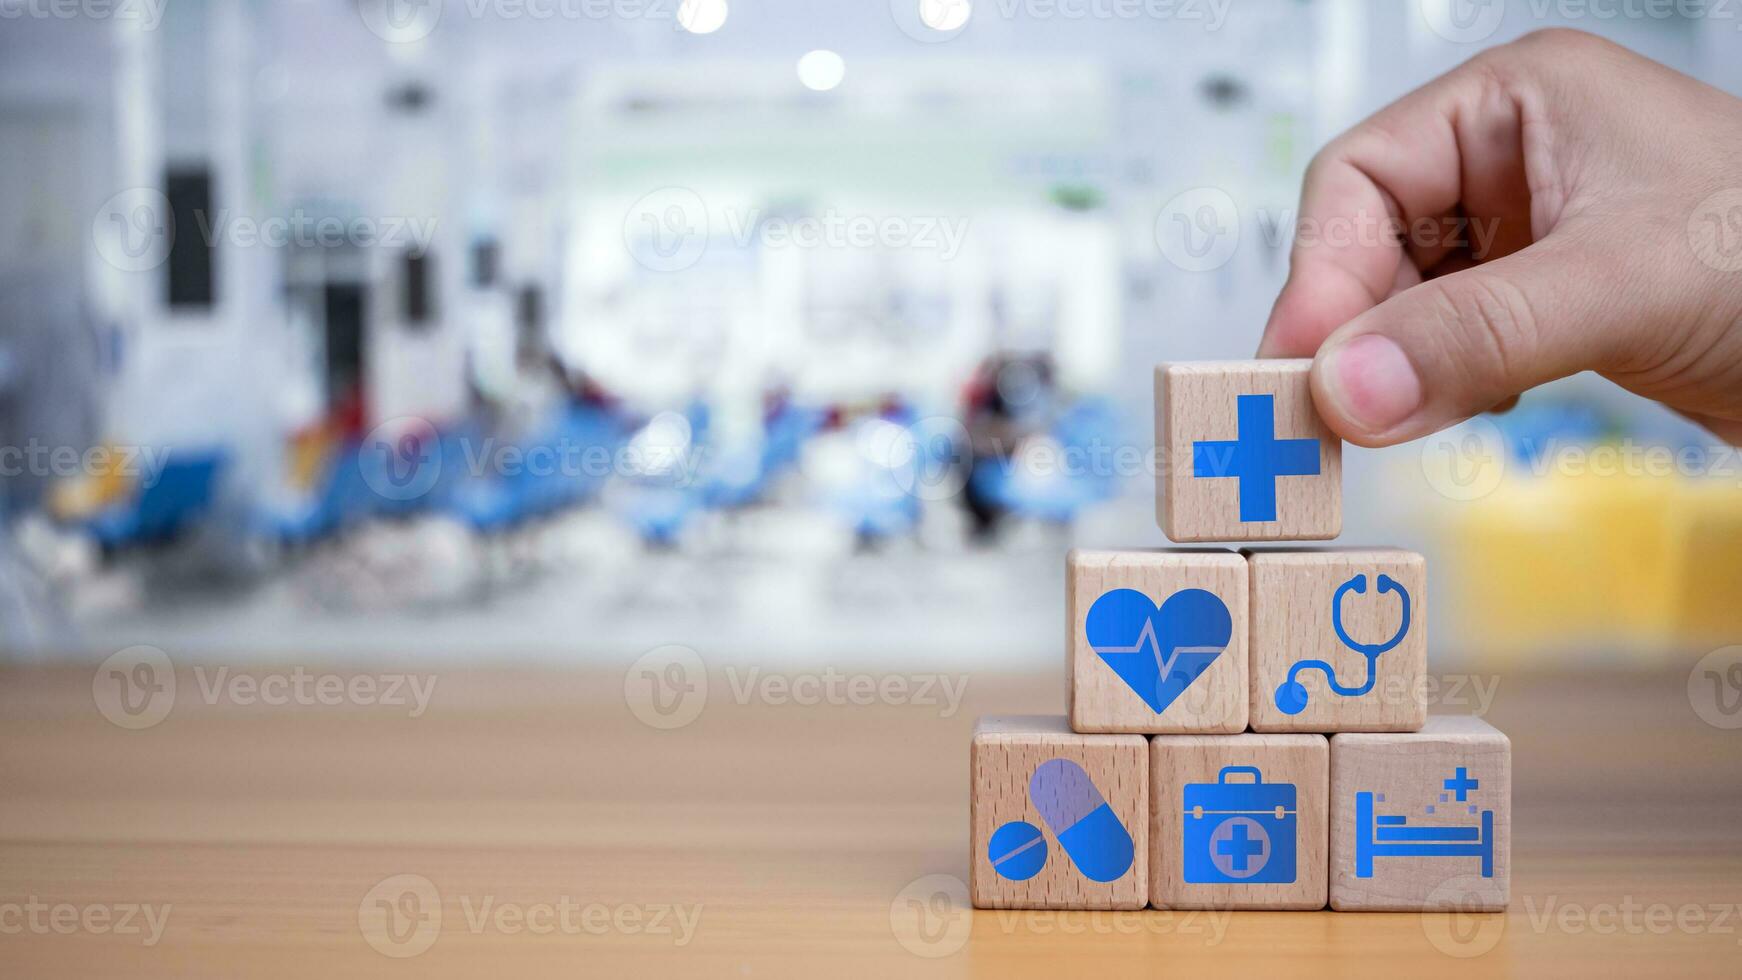 hälsa försäkring och sjukvård begrepp, mänsklig hand innehar trä- blockera med ikoner handla om hälsa försäkring och sjukvård tillgång, pensionering planera på trä- bakgrund. foto